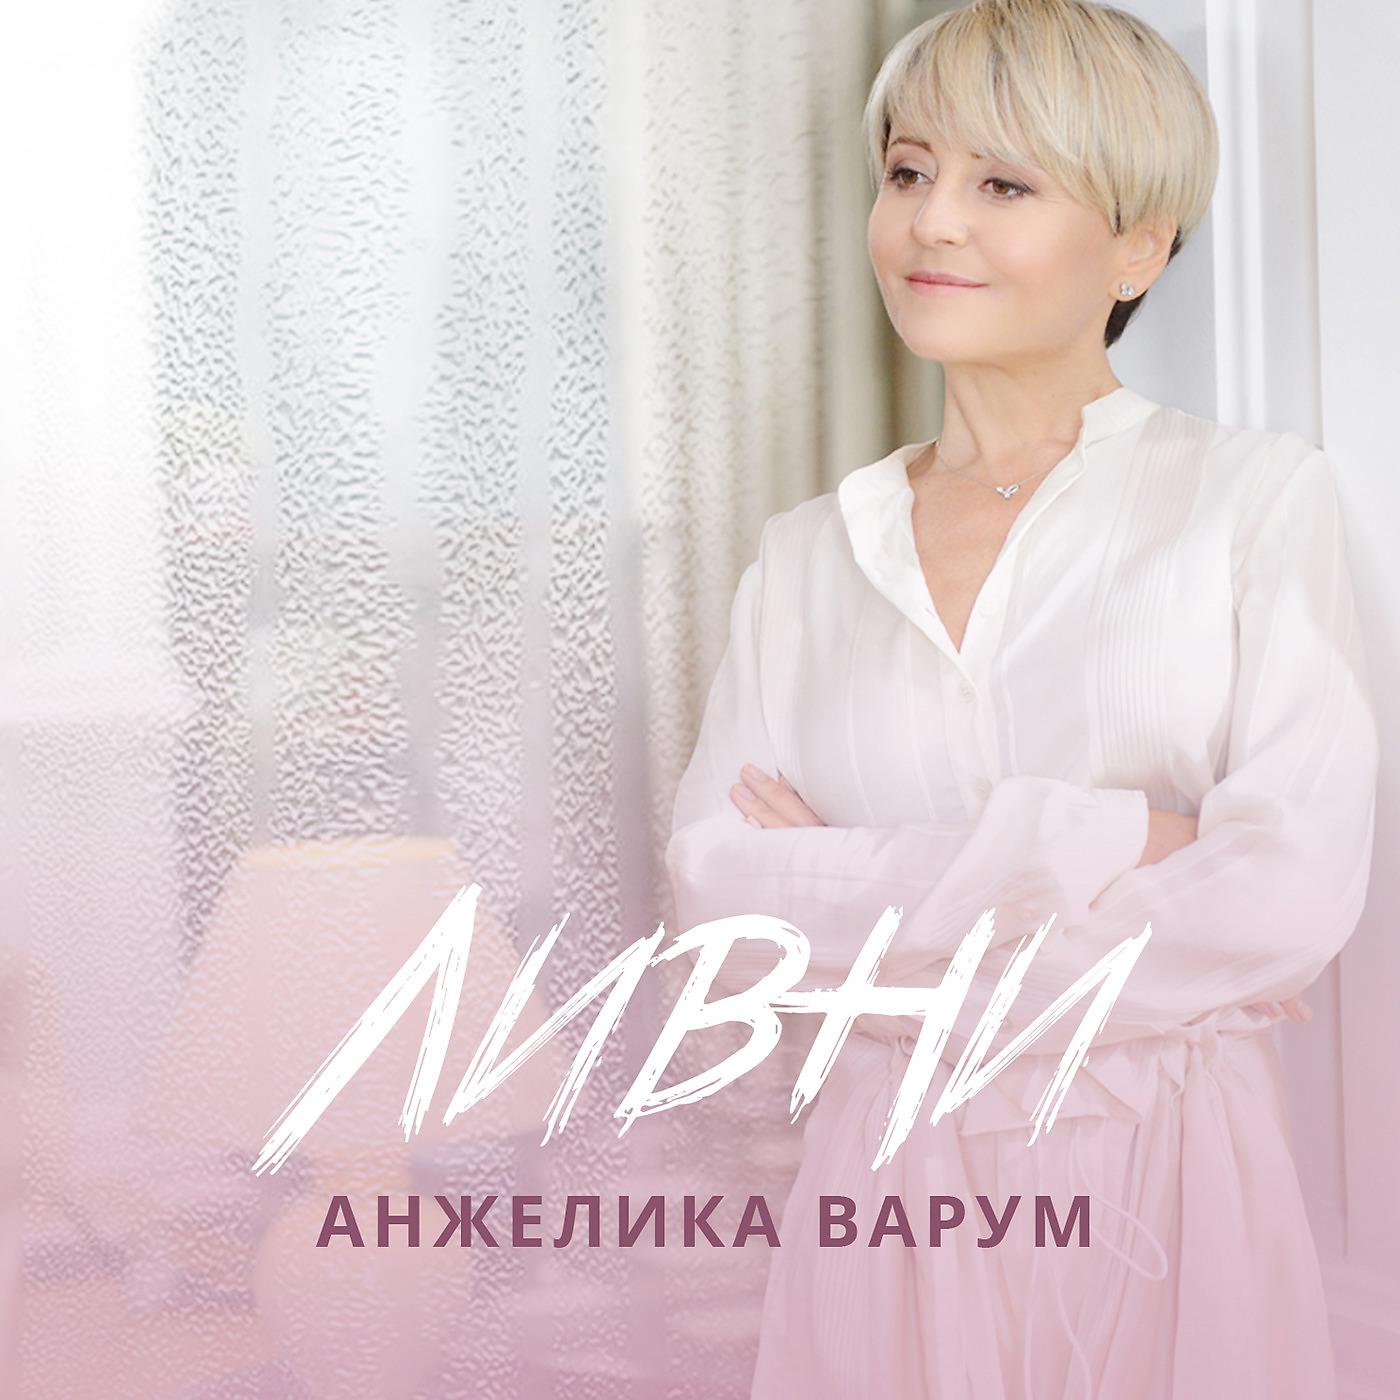 Альбом Ливни исполнителя Анжелика Варум